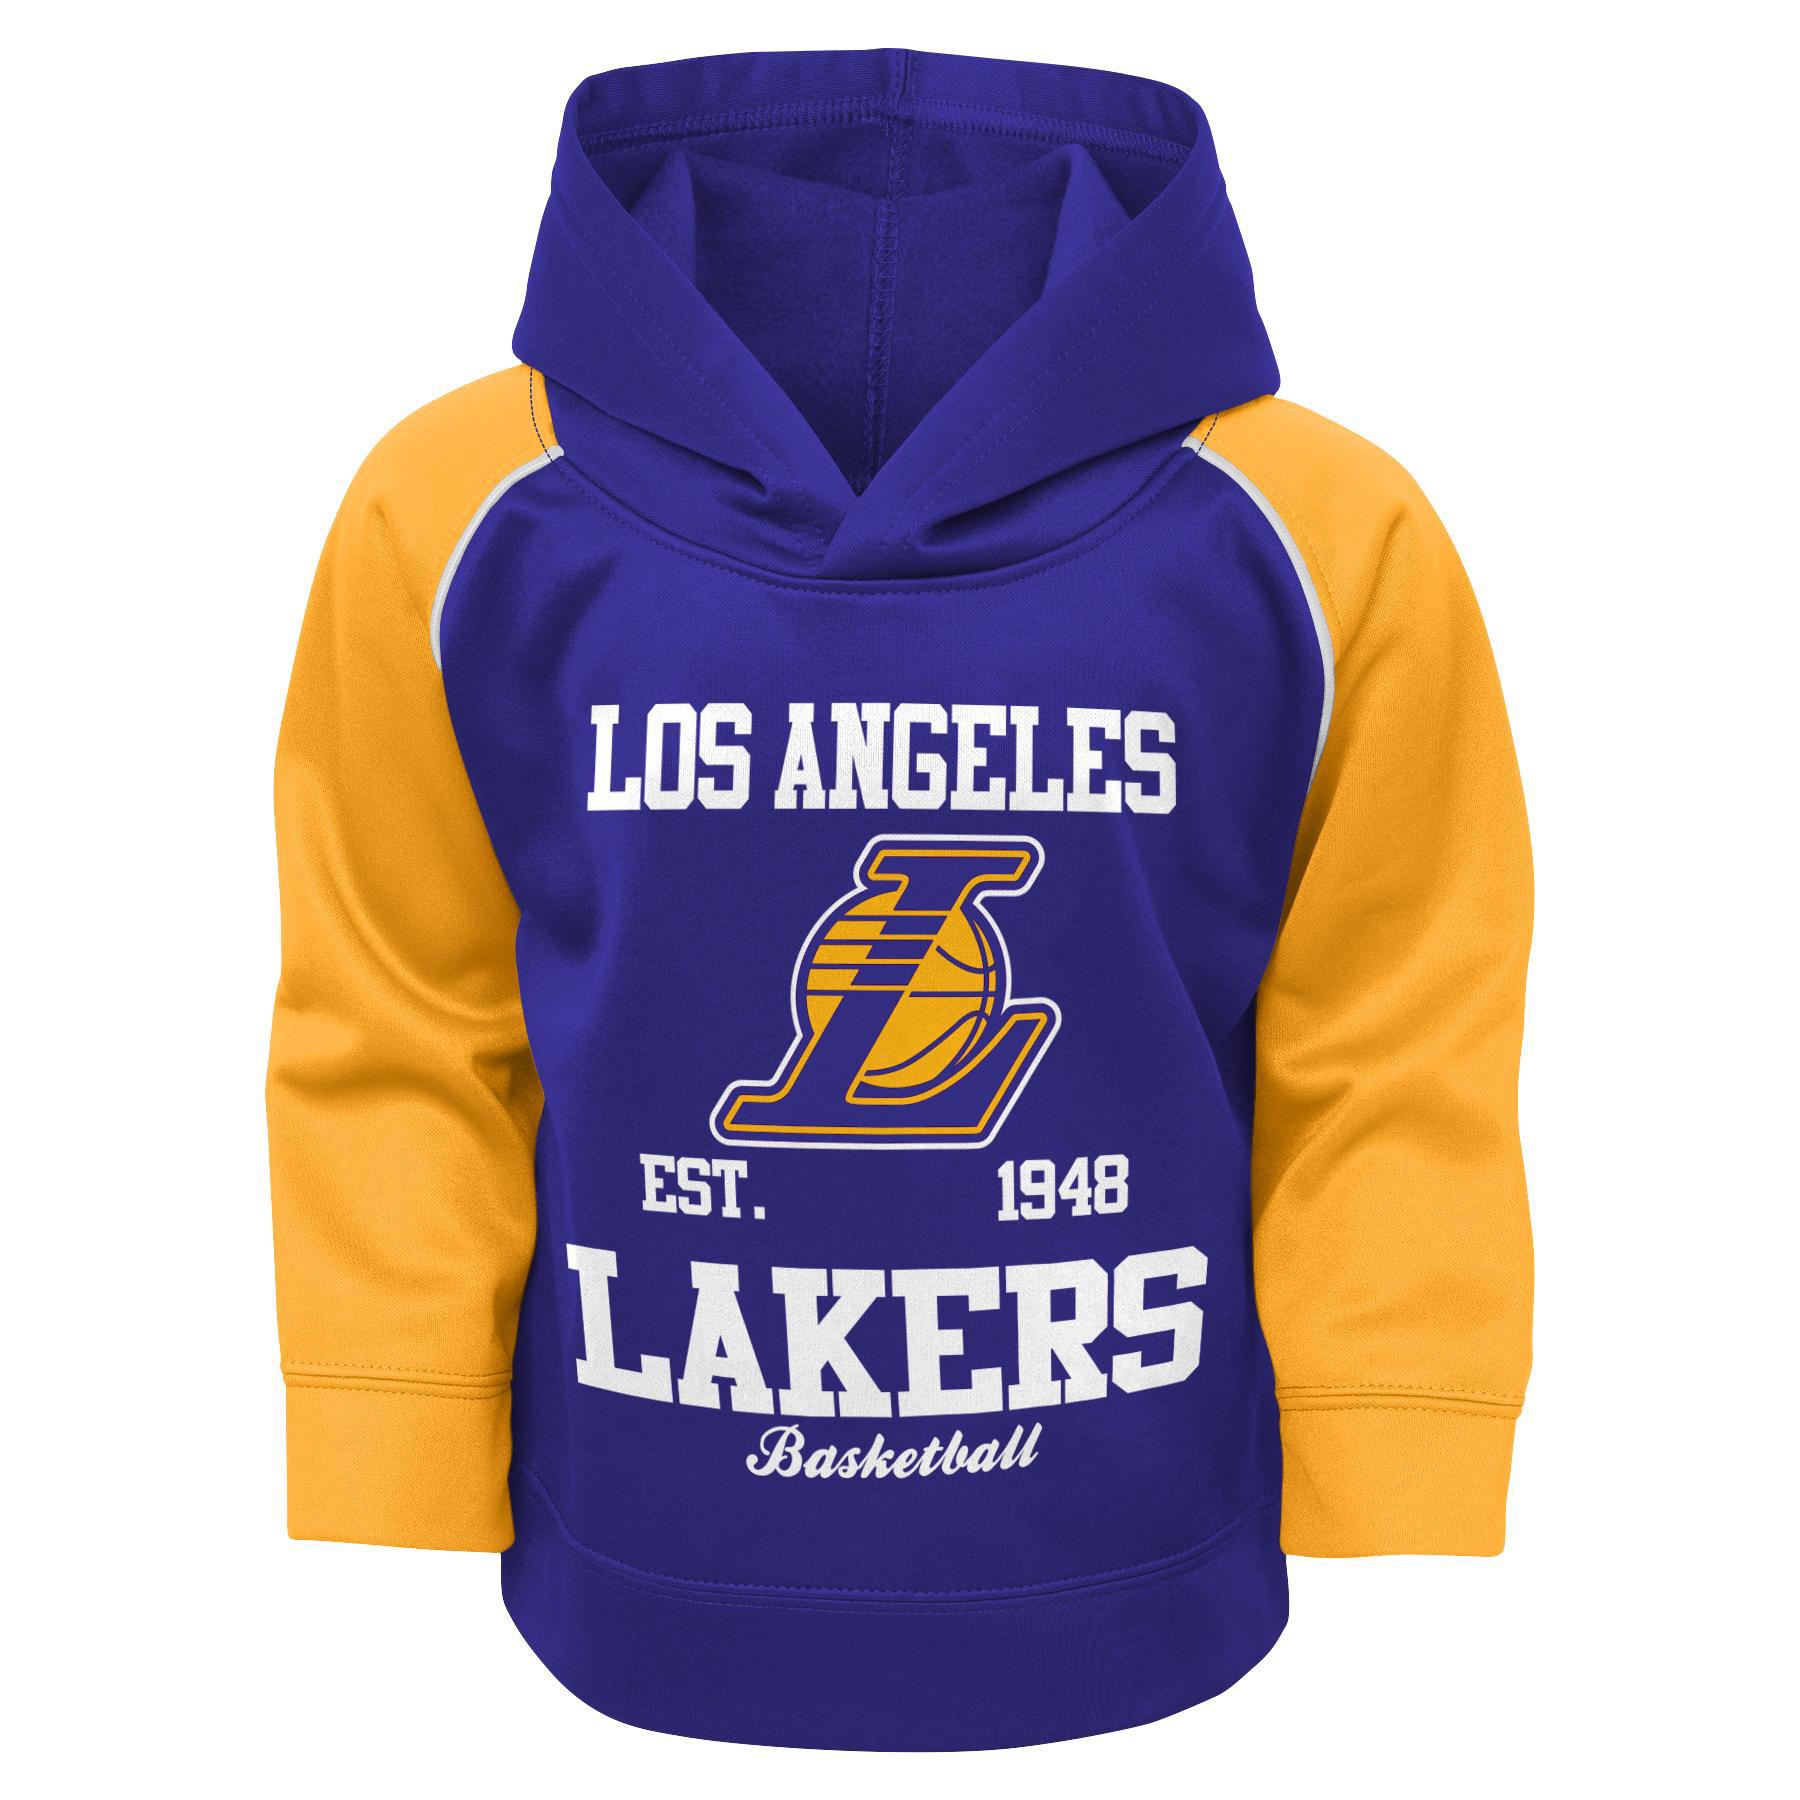 NBA Toddler Boys' Hoodie - Los Angeles Lakers